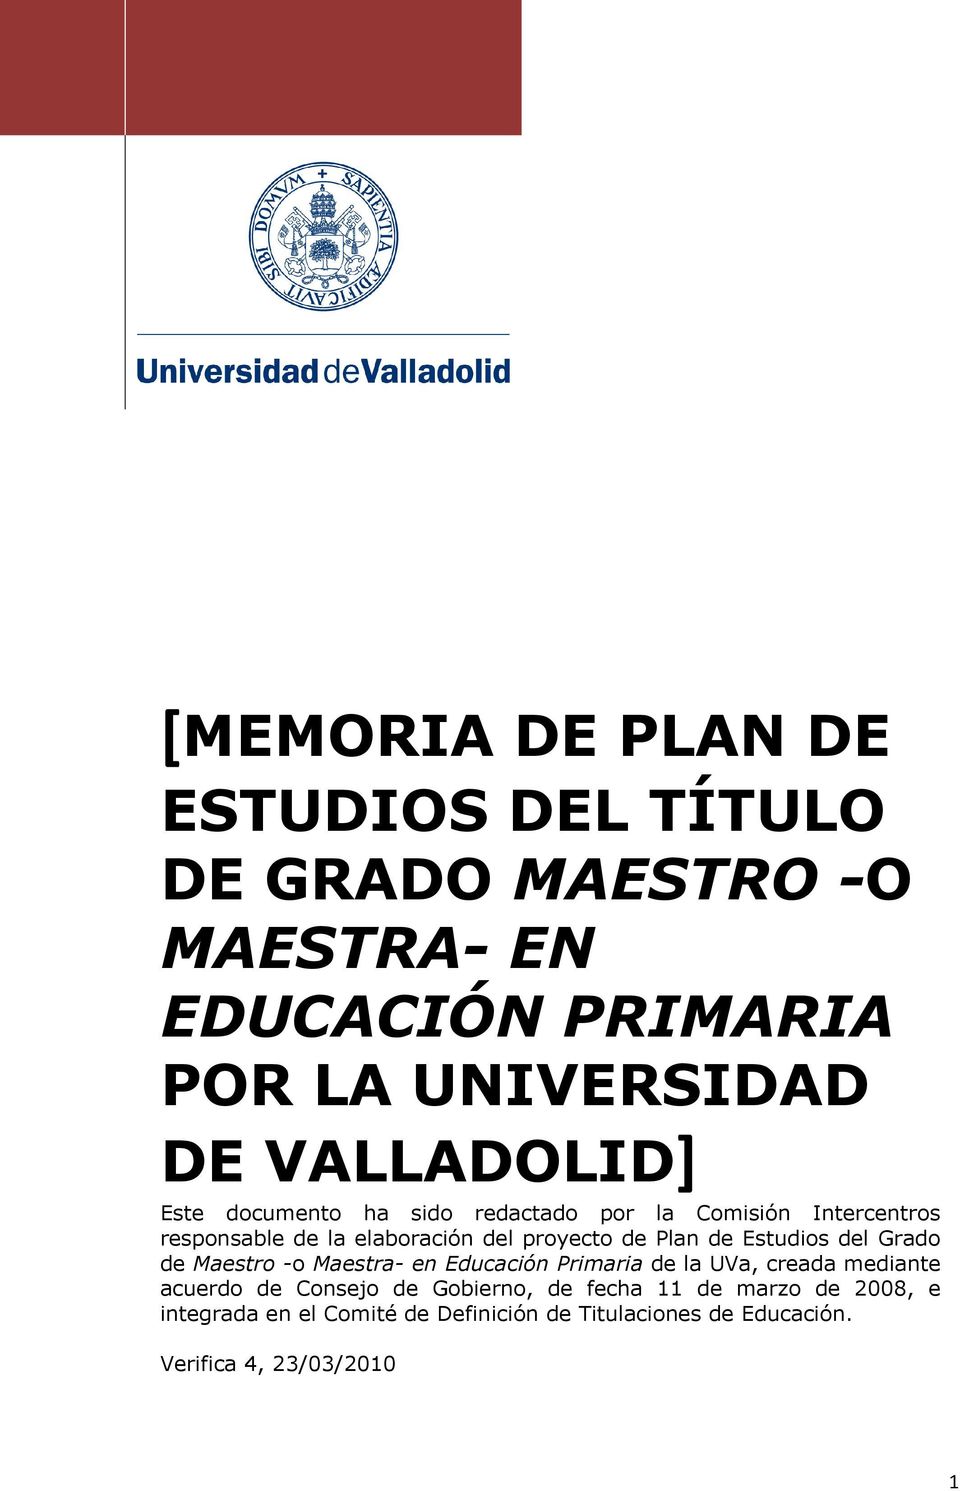 Plan de Estudios del Grado de Maestro -o Maestra- en Educación Primaria de la UVa, creada mediante acuerdo de Consejo de